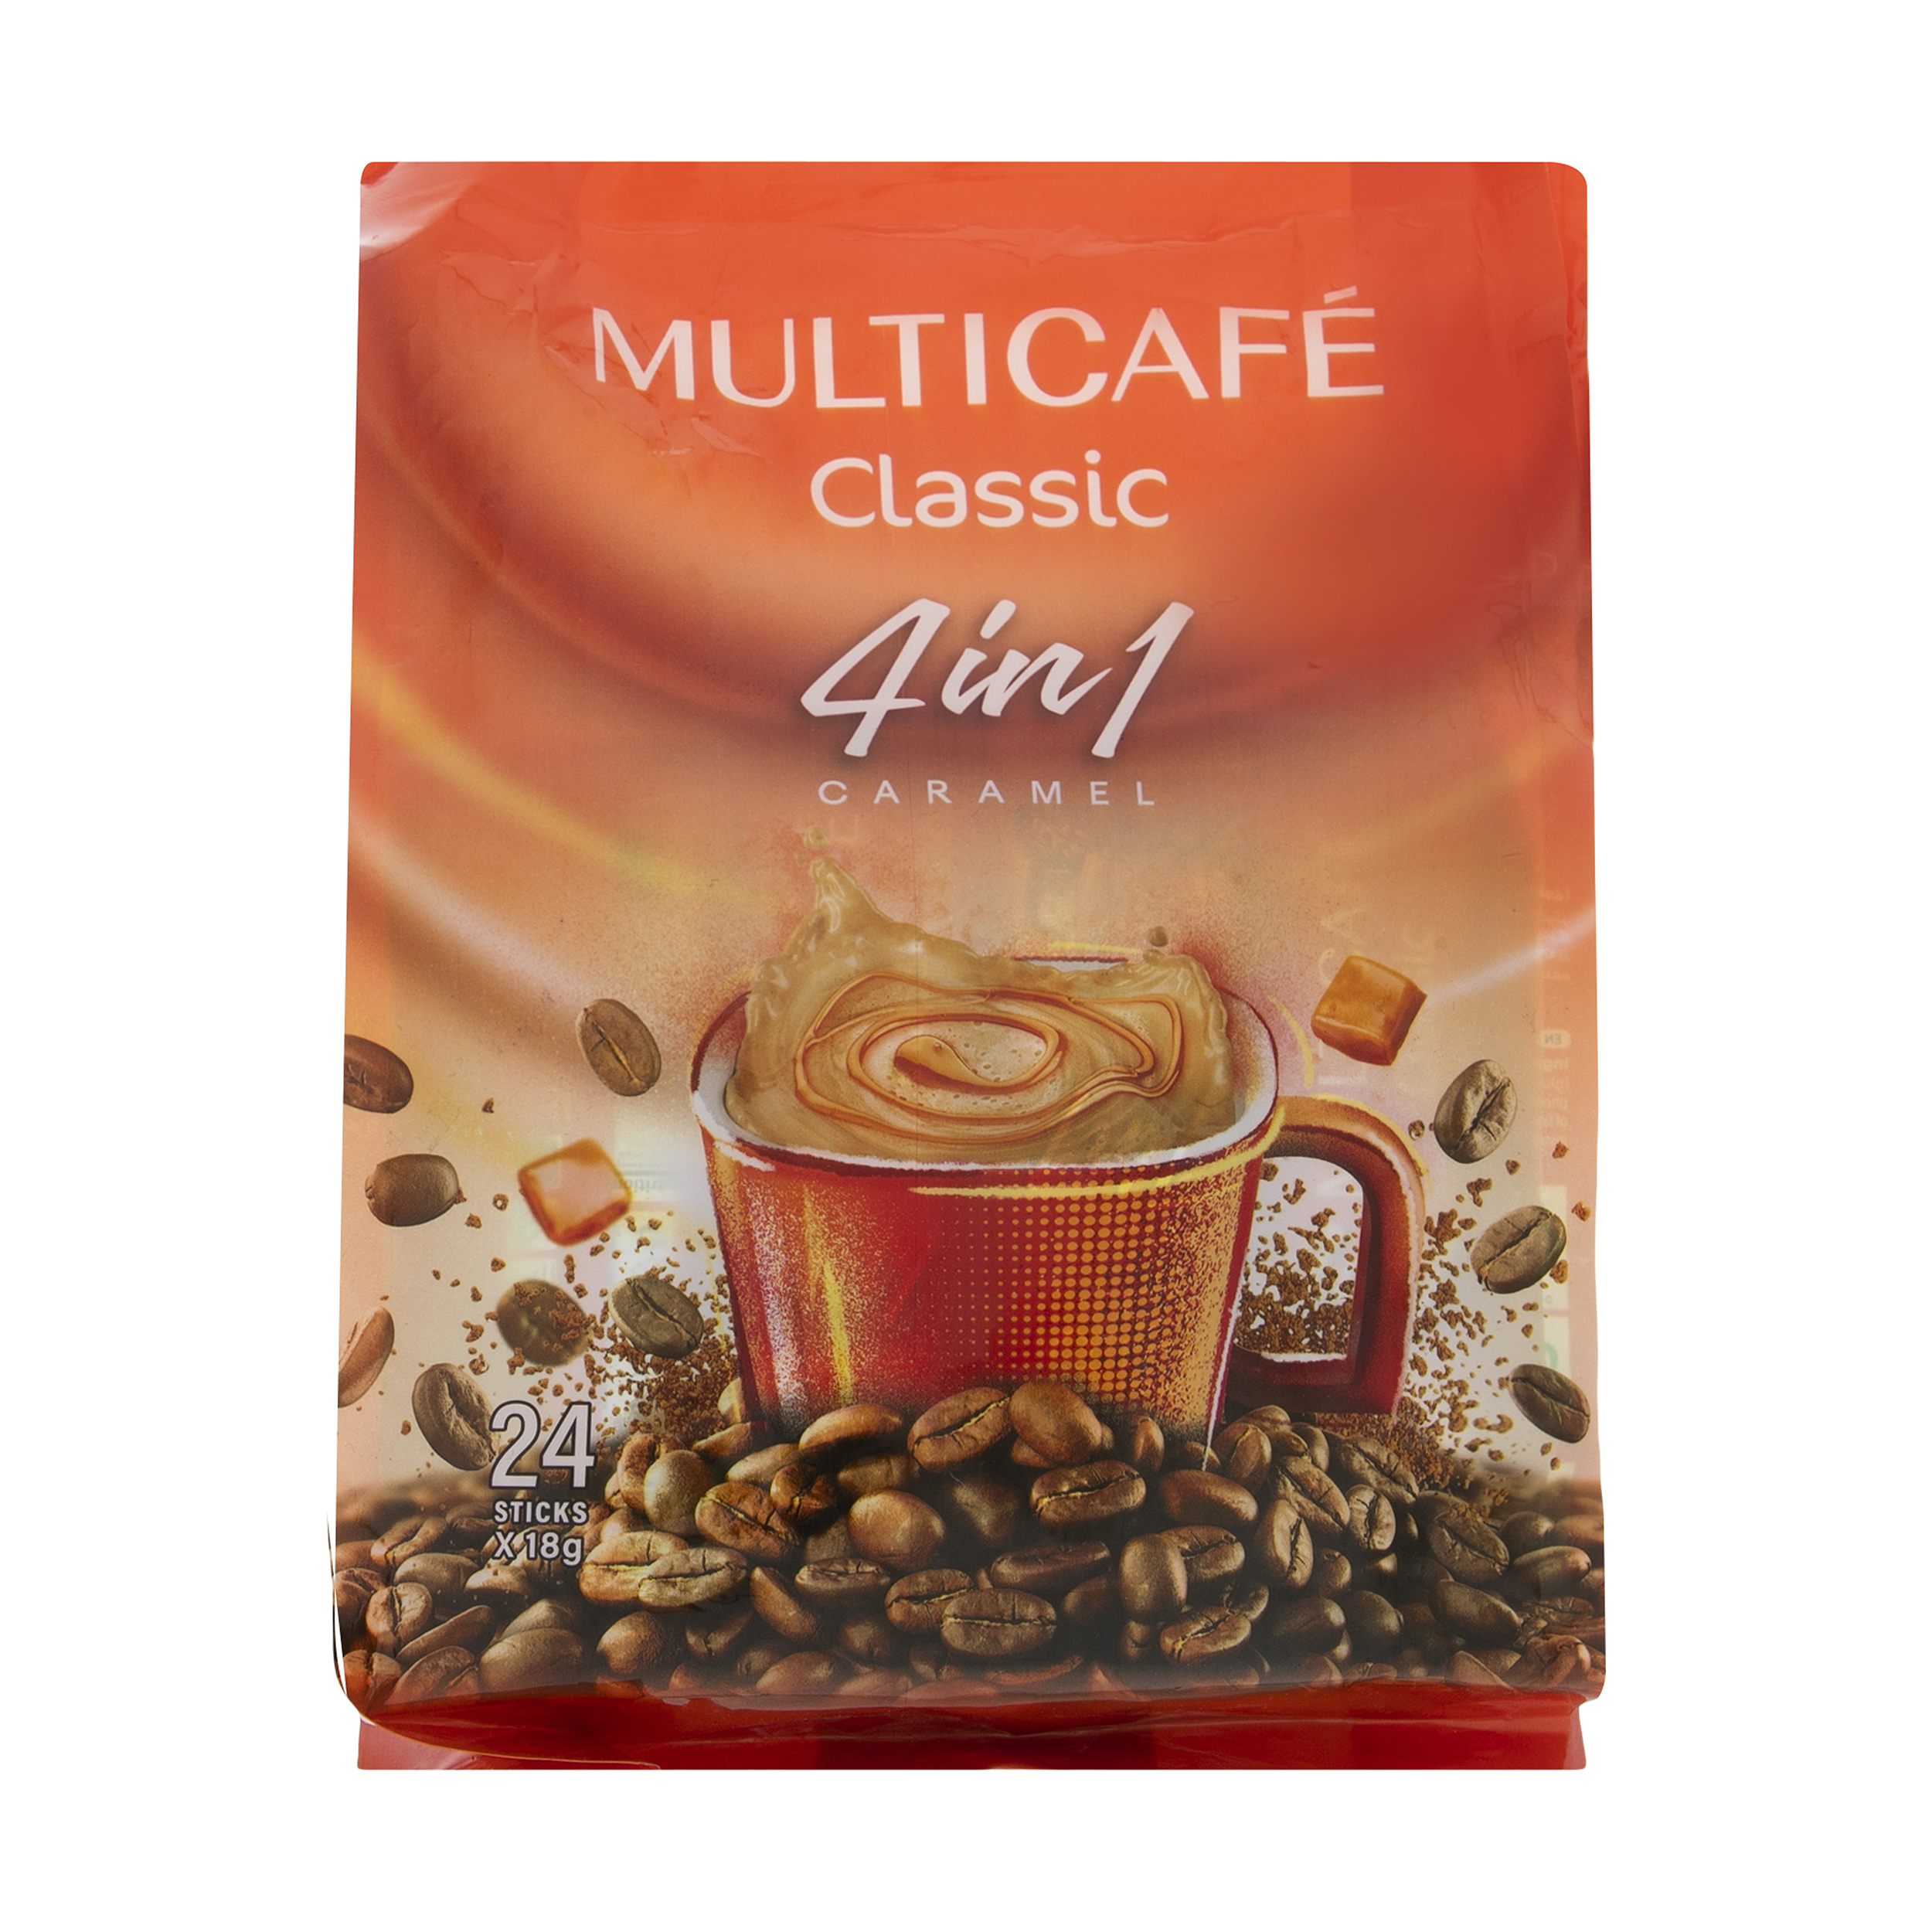  پودر قهوه فوری 1 × 4 کلاسیک مولتی کافه - 18 گرم بسته 24 عددی